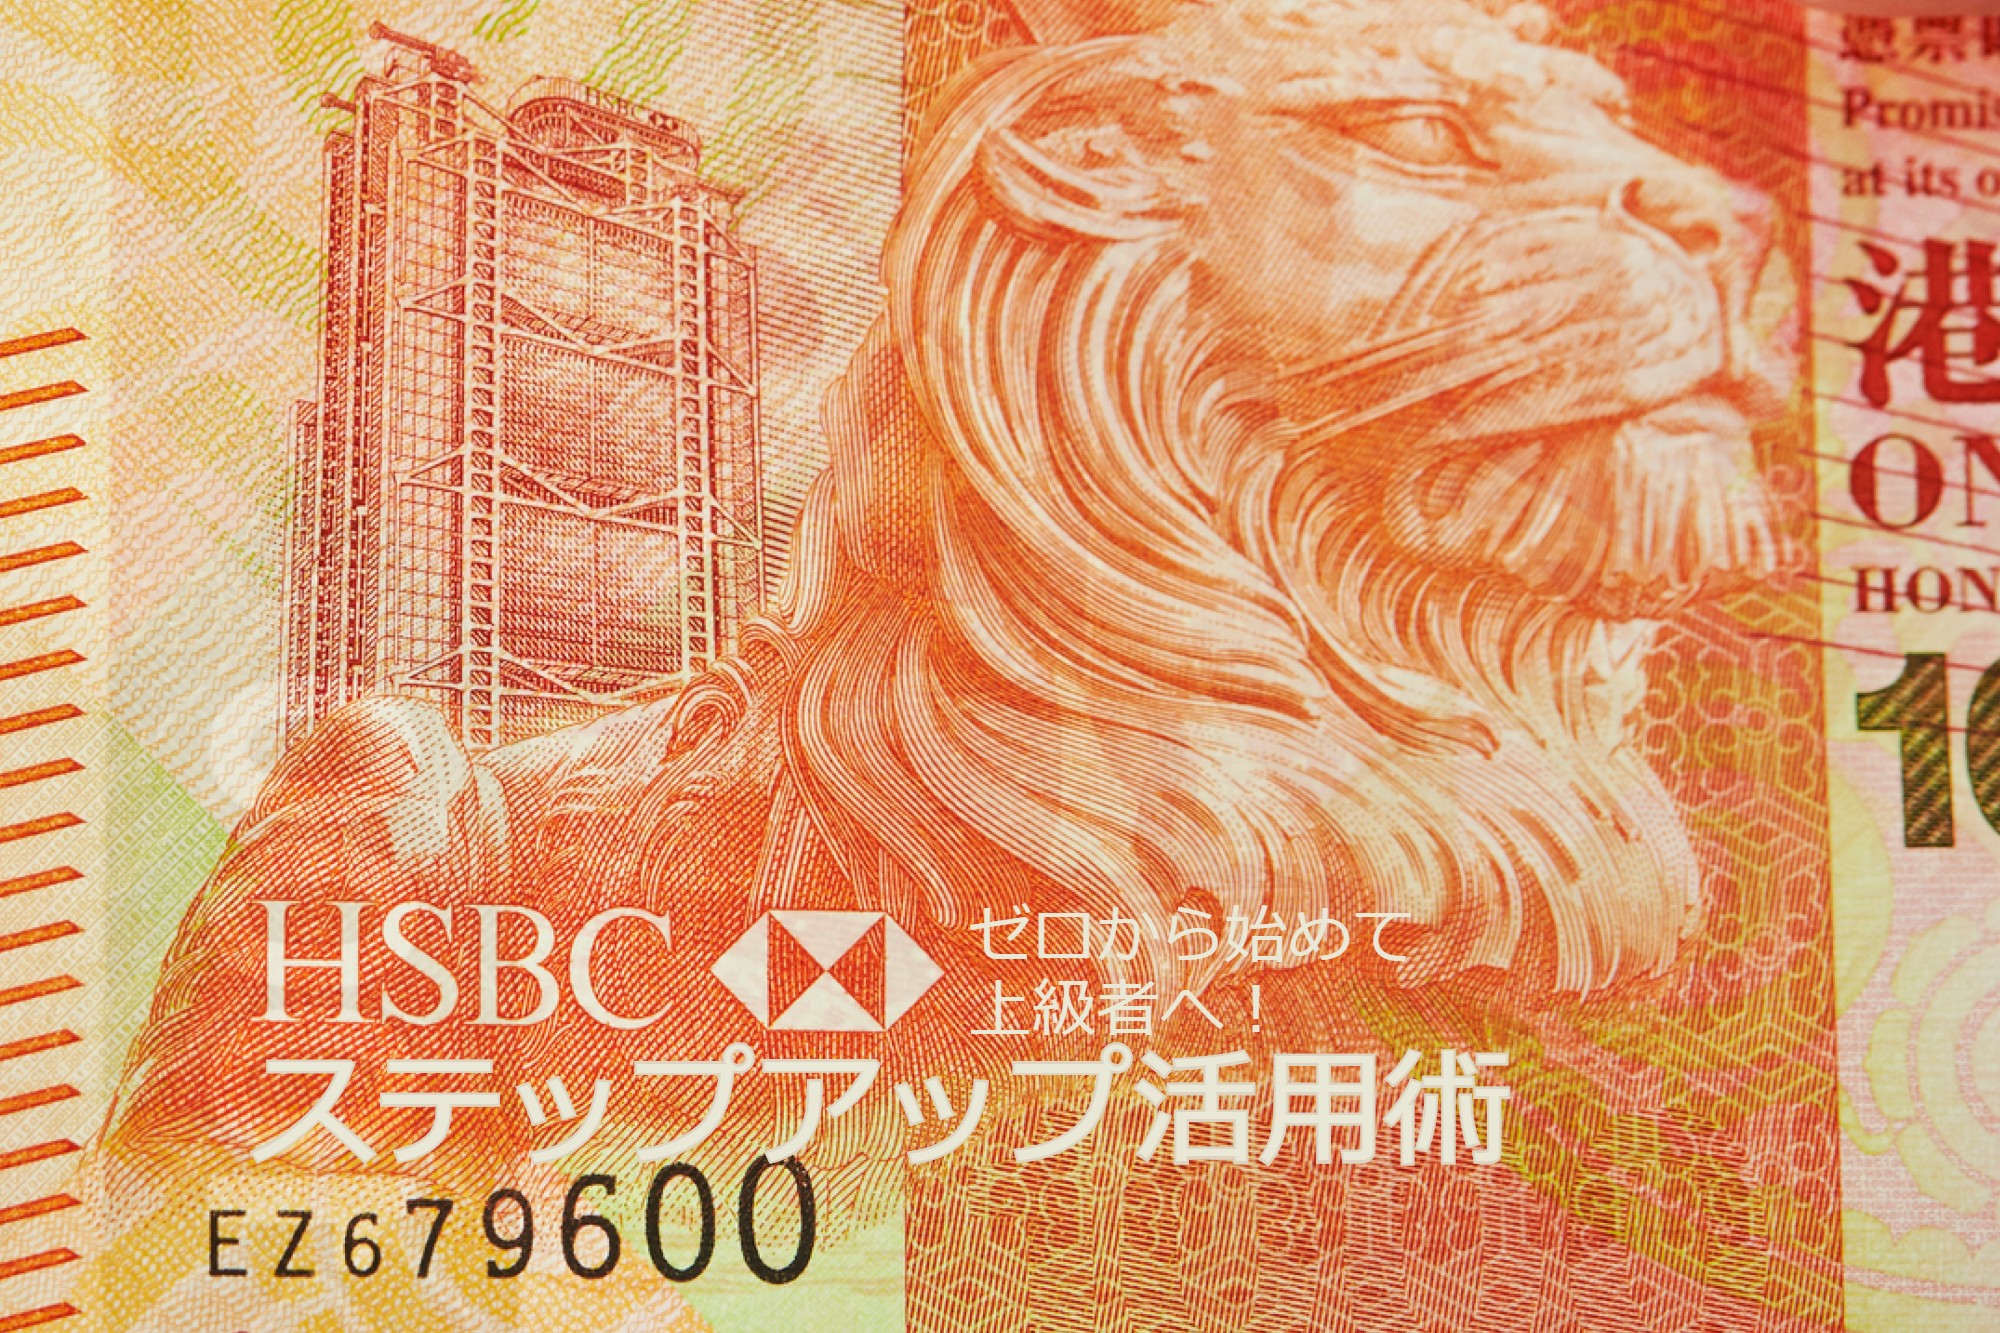 Hsbc香港のステップアップ活用術 ゼロから始めて上級者へ お金の窓口